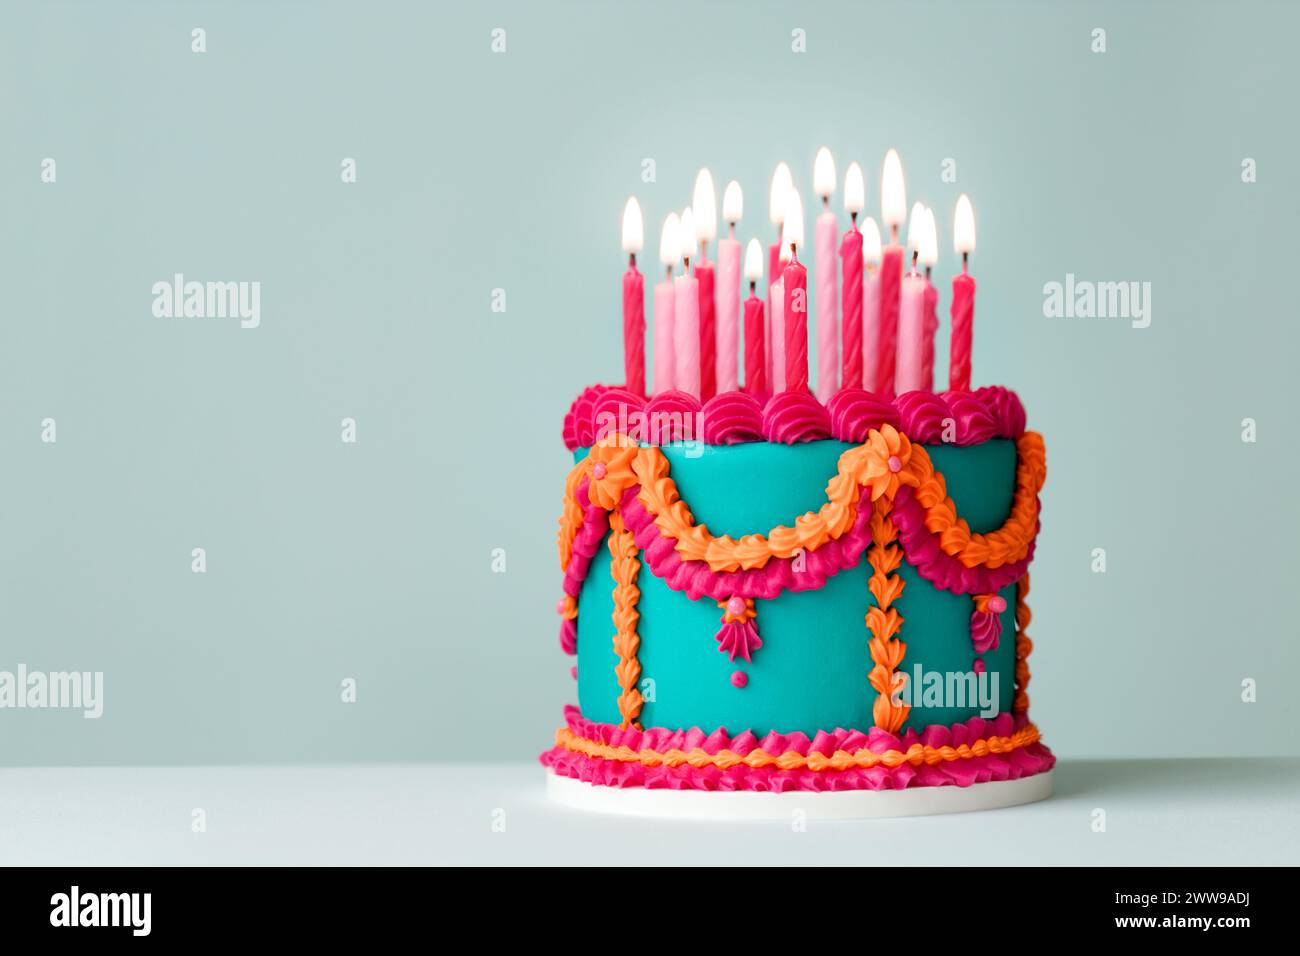 Elaborata torta di compleanno color giada con fronzoli in stile vintage con condutture rosa e arancio e candele di compleanno Foto Stock